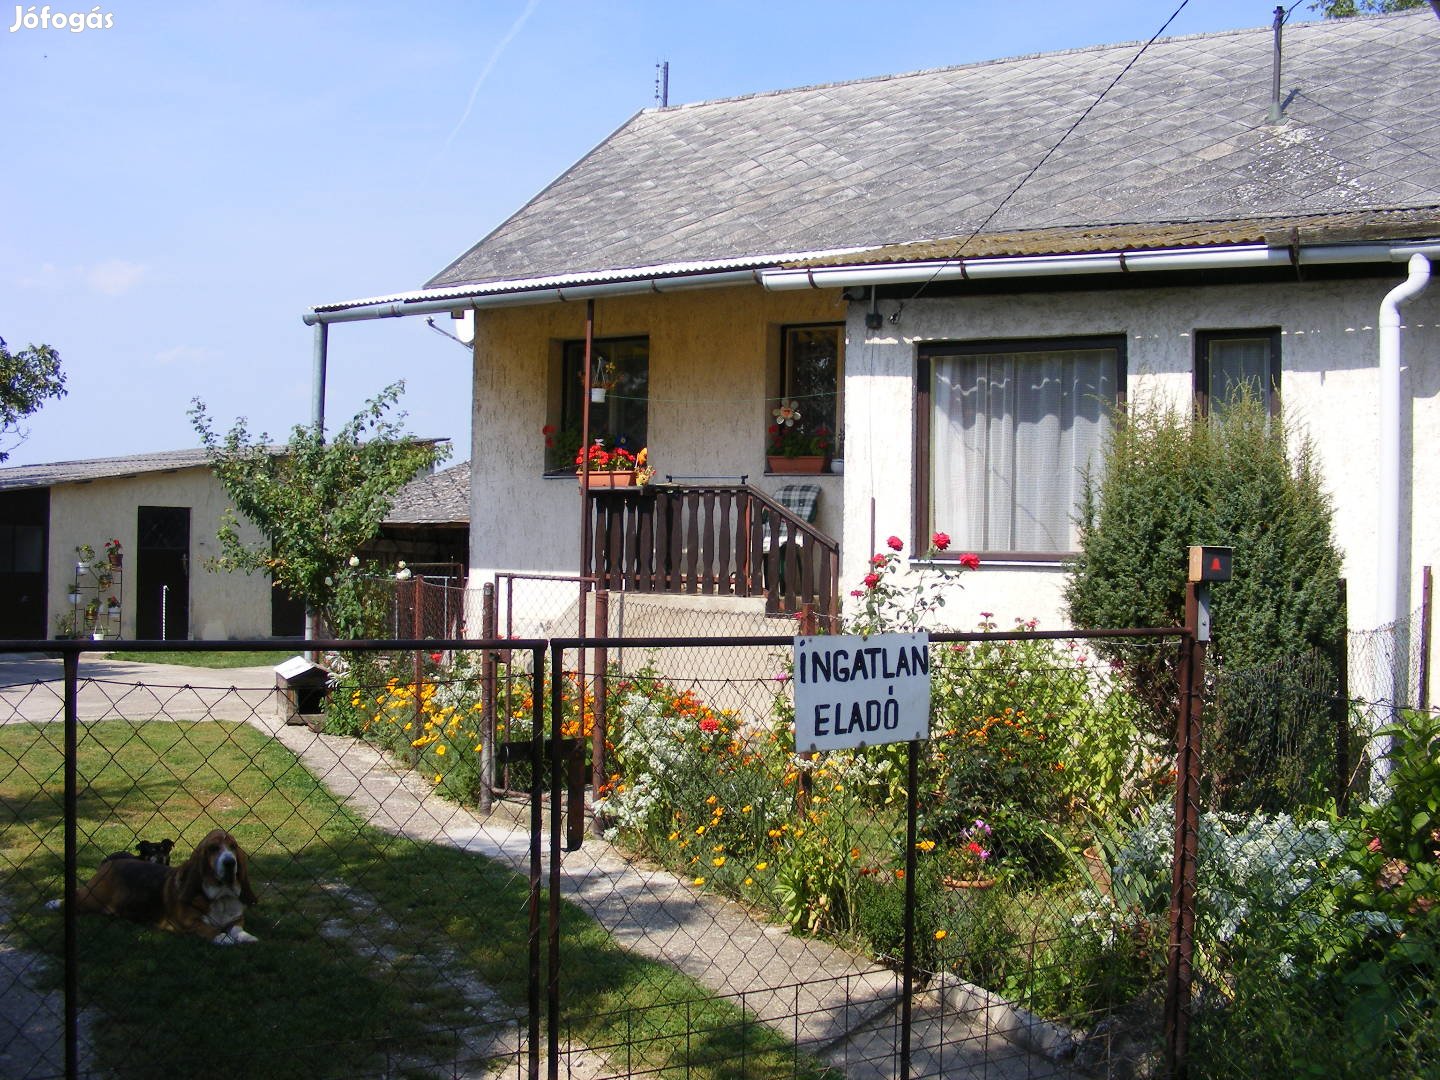 Eladó családi ház Sátoraljaújhelyen, a Köztársaság utca végén